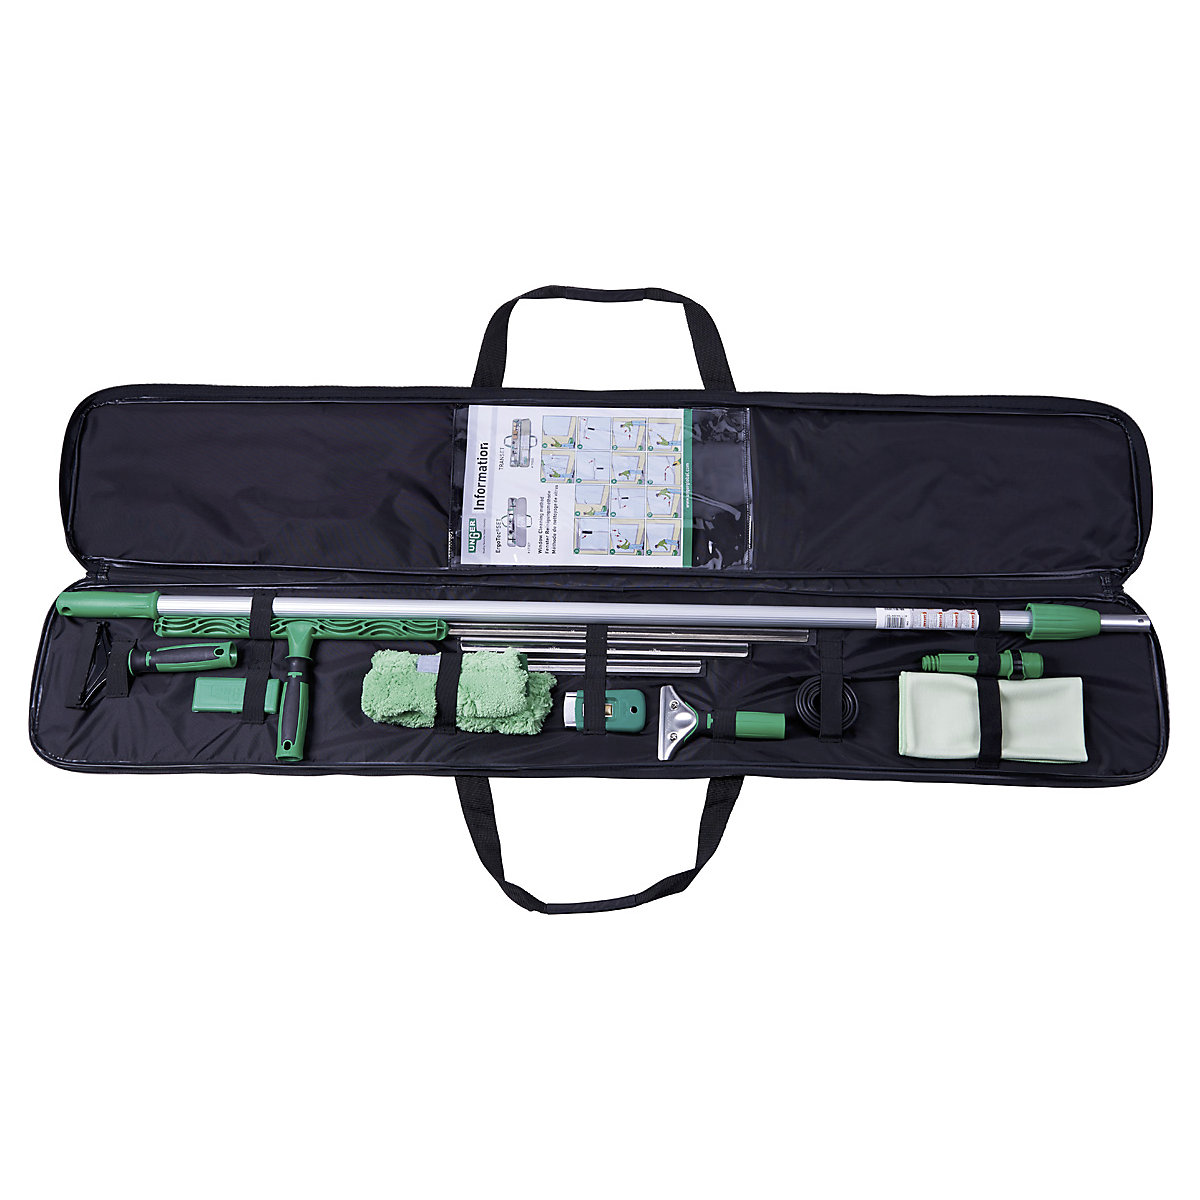 Kit per la pulizia dei vetri ErgoTec® – Unger, borsa da trasporto in nylon con tutti i prodotti, lunghezza 1350 mm, a partire da 2 pz.-1